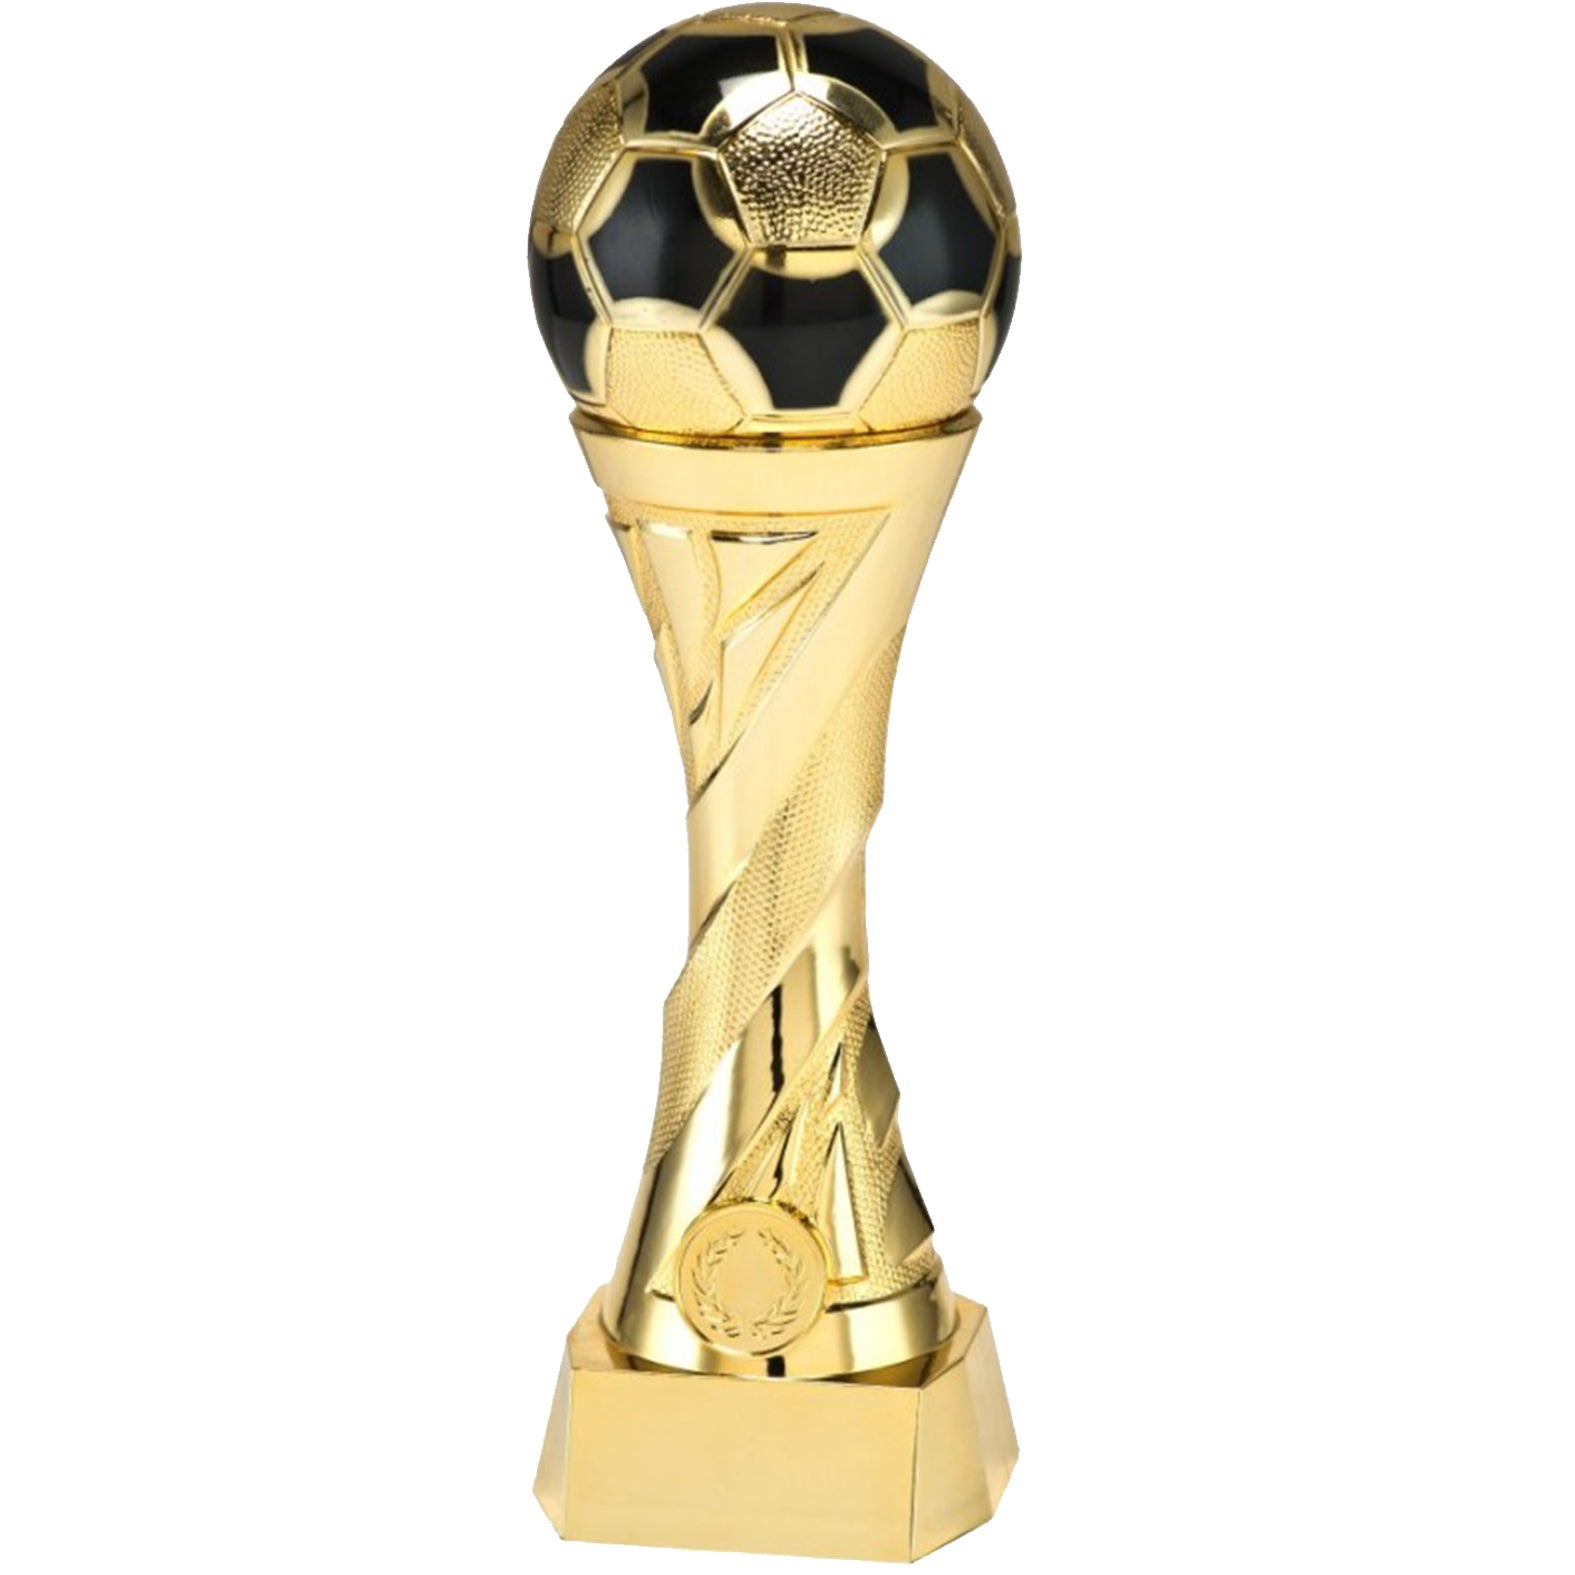 Premiazioni personalizzate premio calcio coppa del mondo – Hole Gadget